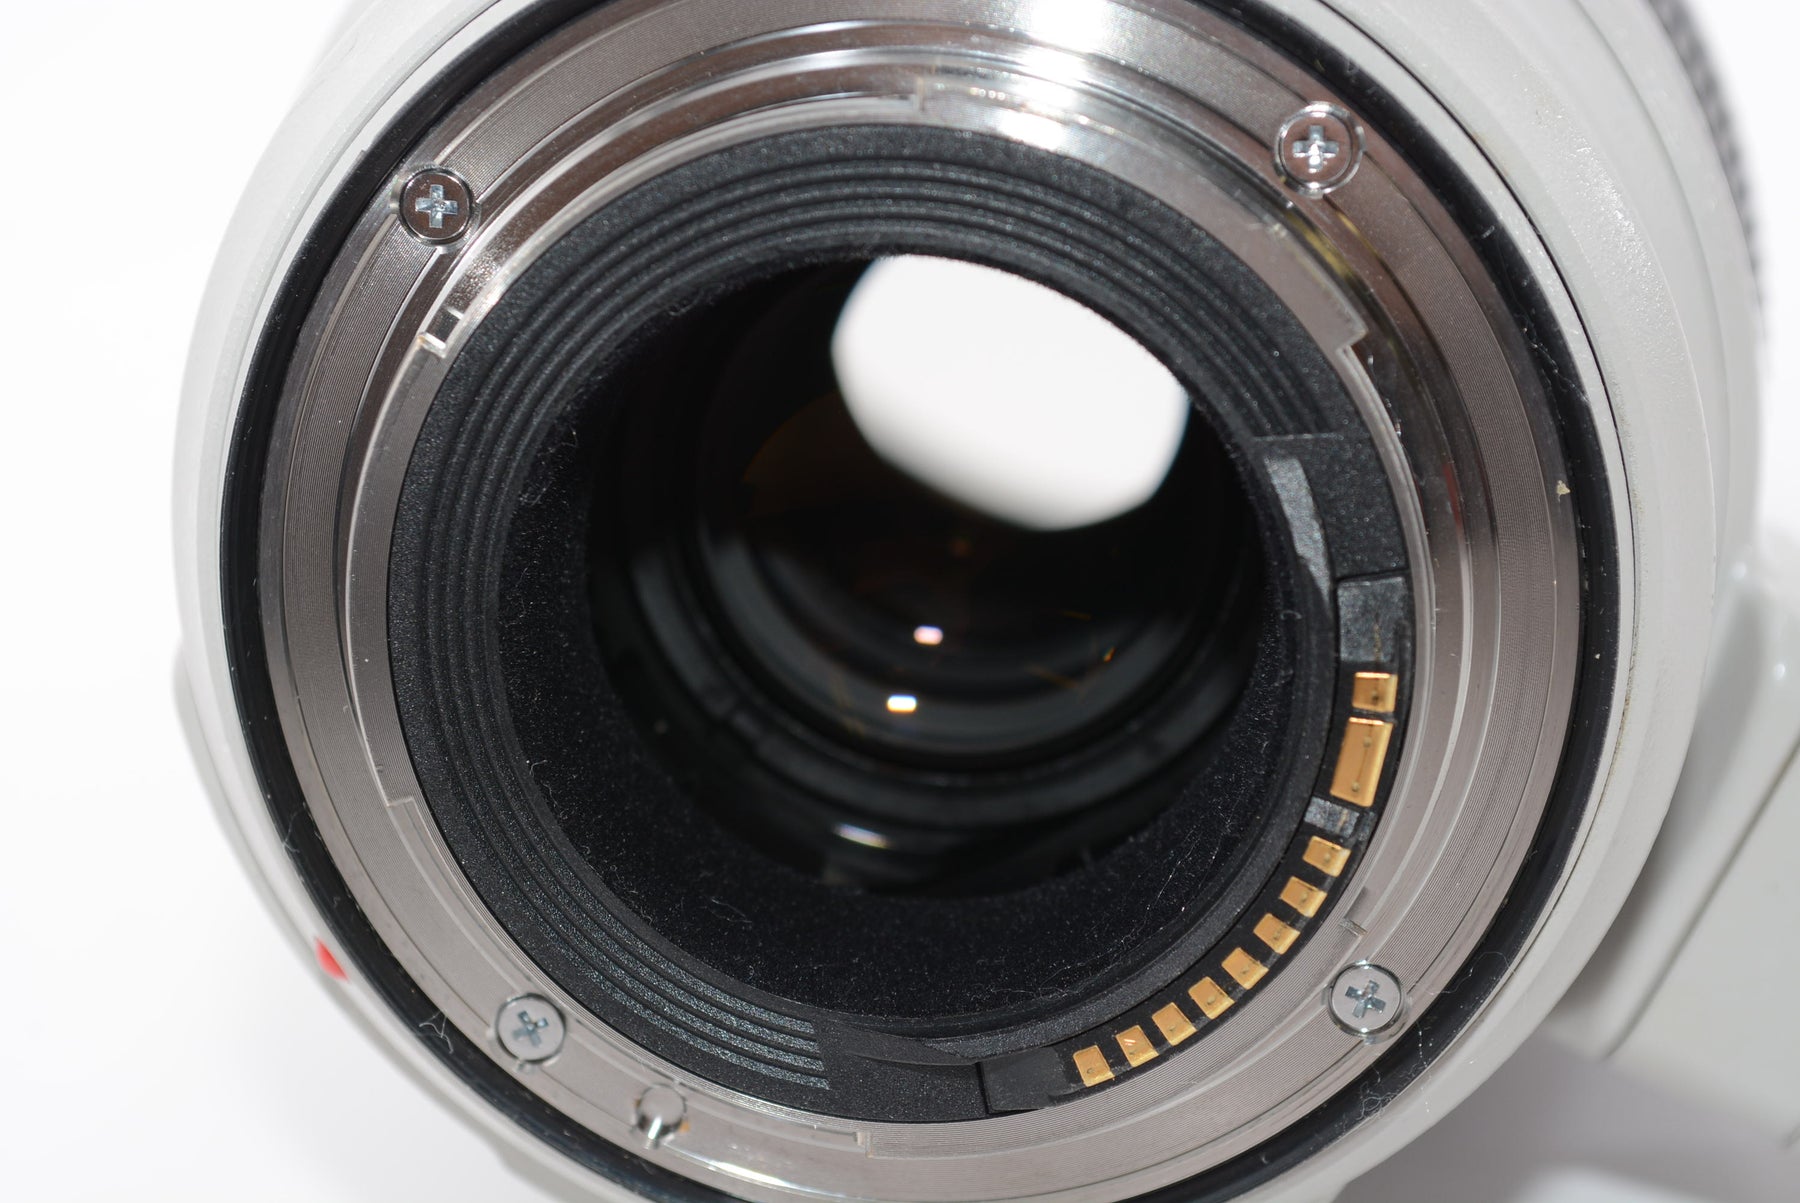 【外観並級】Canon 望遠ズームレンズ EF100-400mm F4.5-5.6L IS II USM フルサイズ対応 EF100-400LIS2